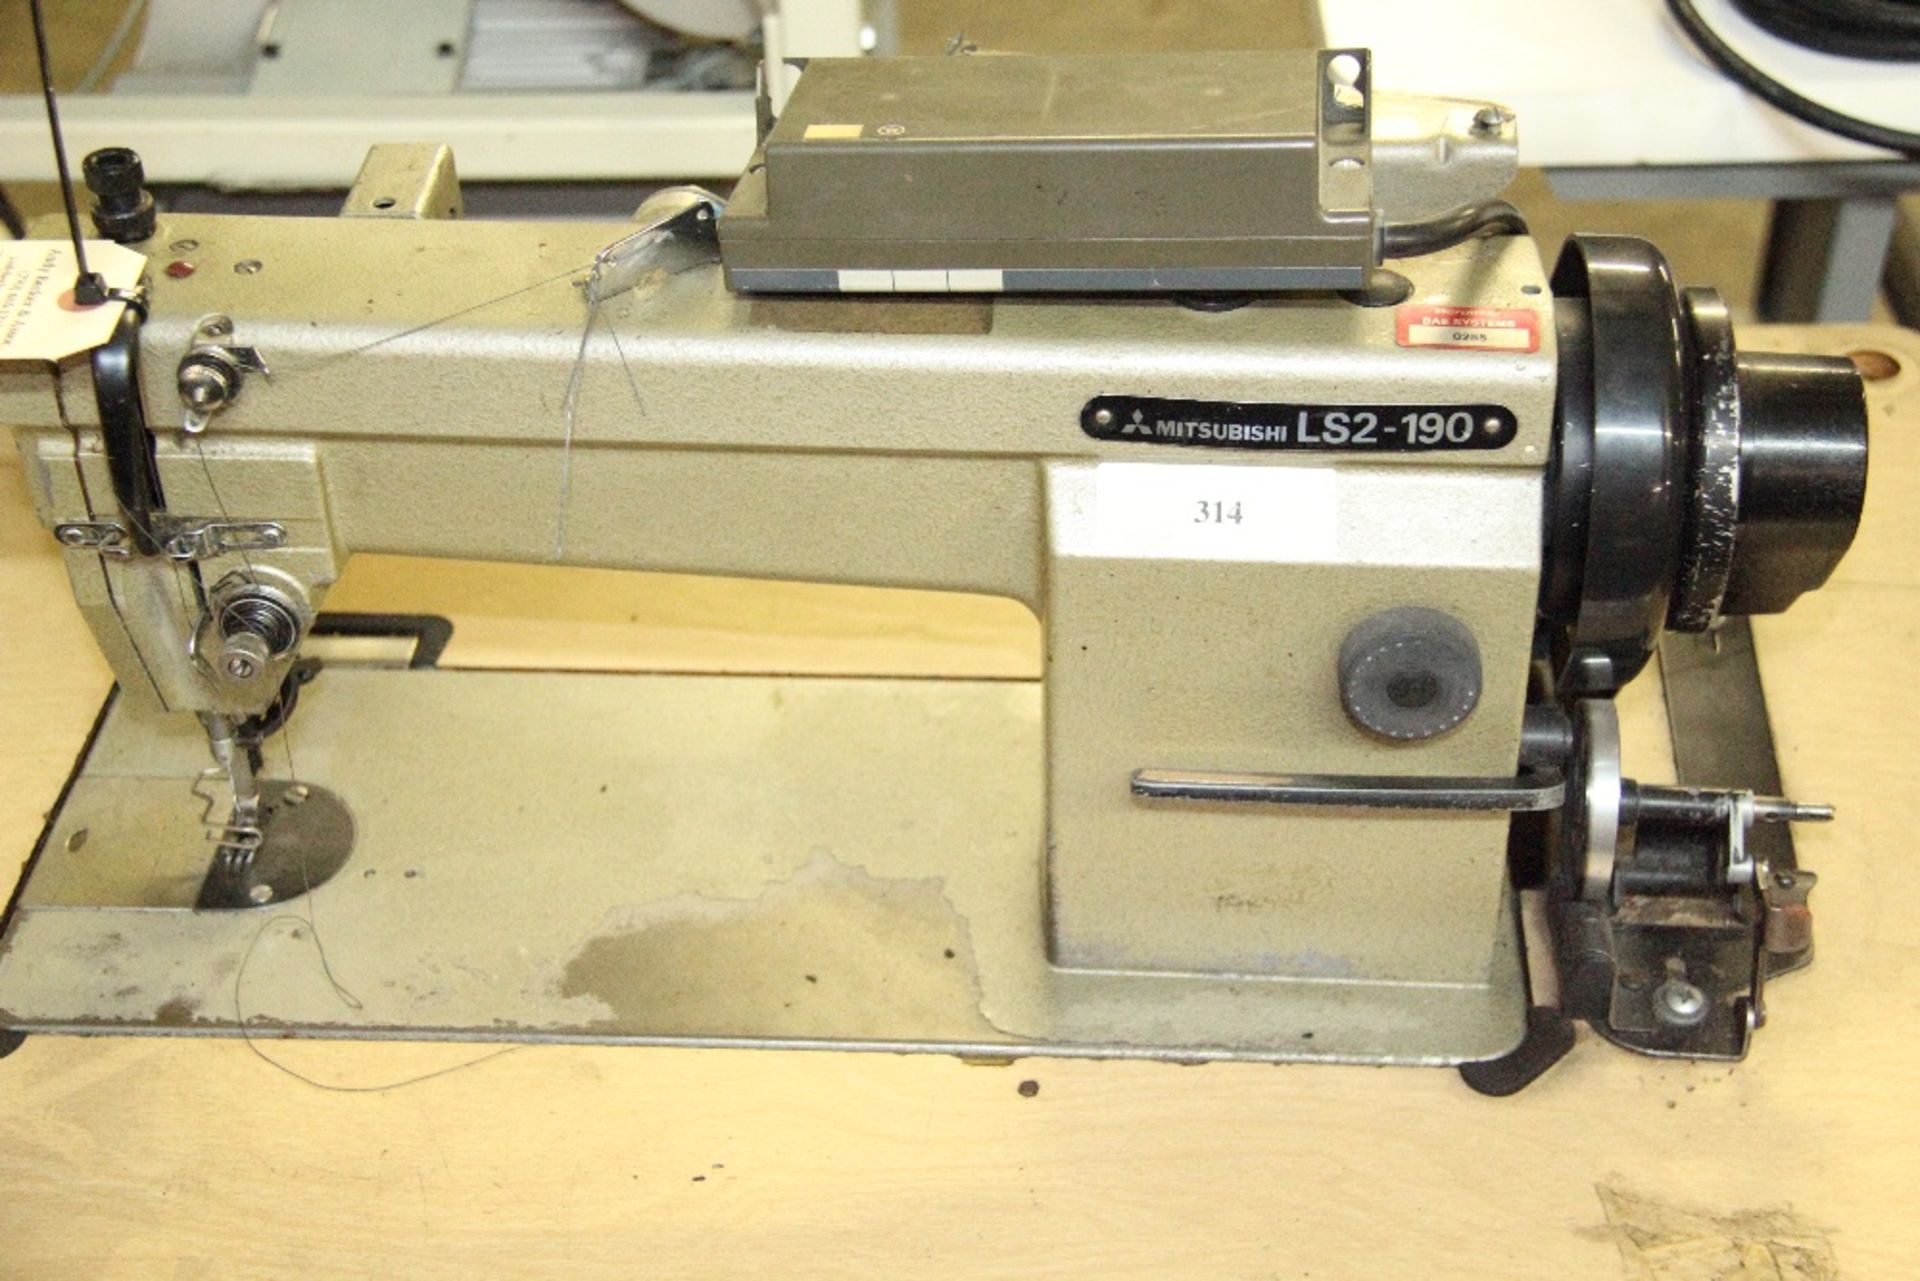 Mitsubishi LS2-190 Single Needle Lockstitch Sewing Machine - Image 2 of 3